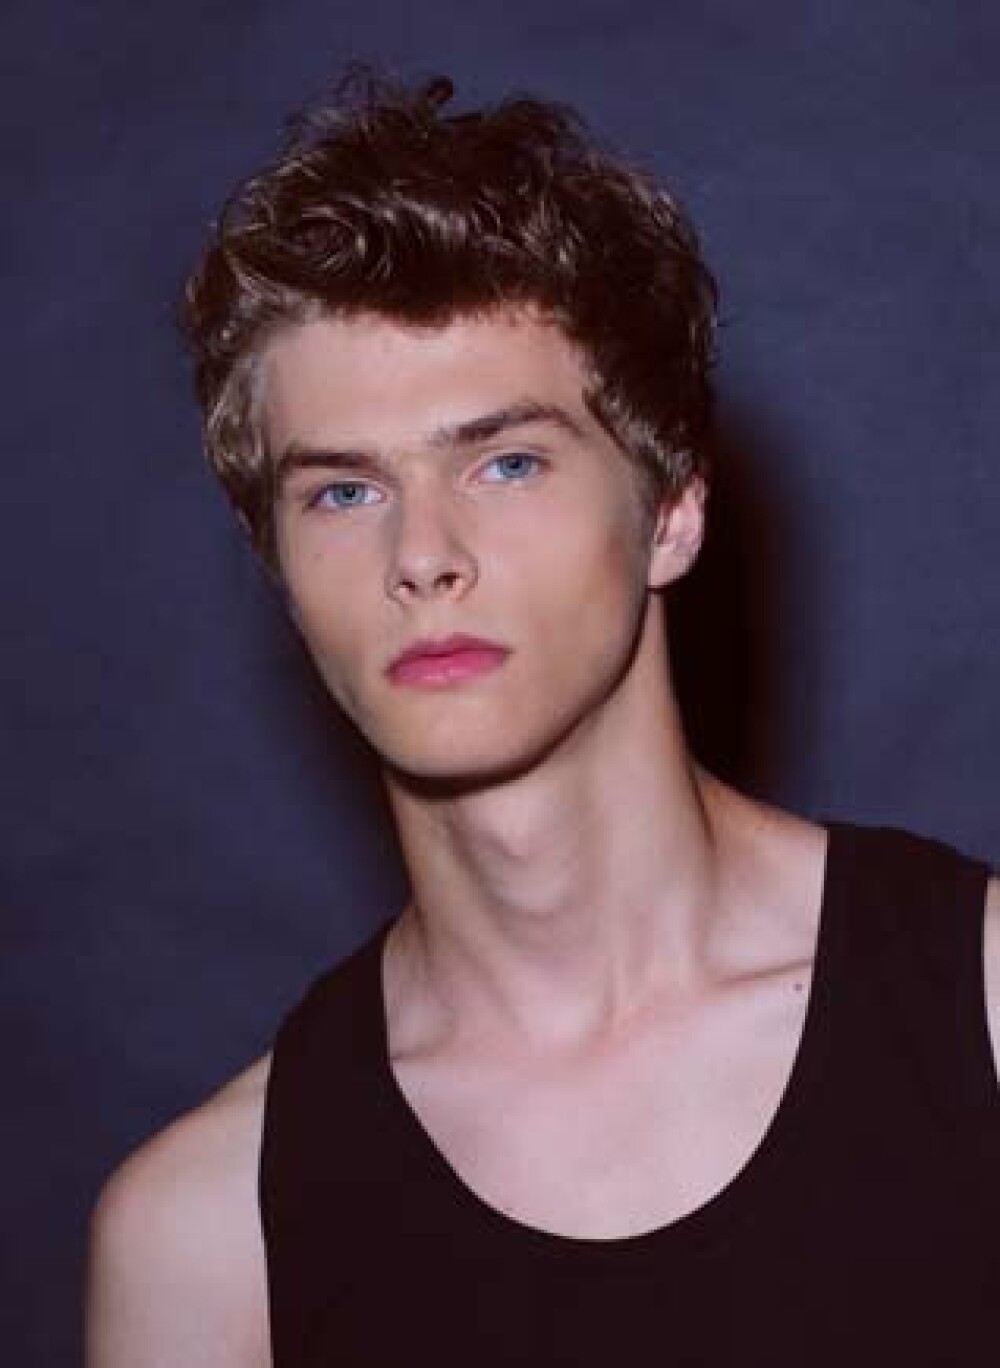 Un adolescent din Romania a fost desemnat cel mai frumos model masculin din lume. GALERIE FOTO - Imaginea 1